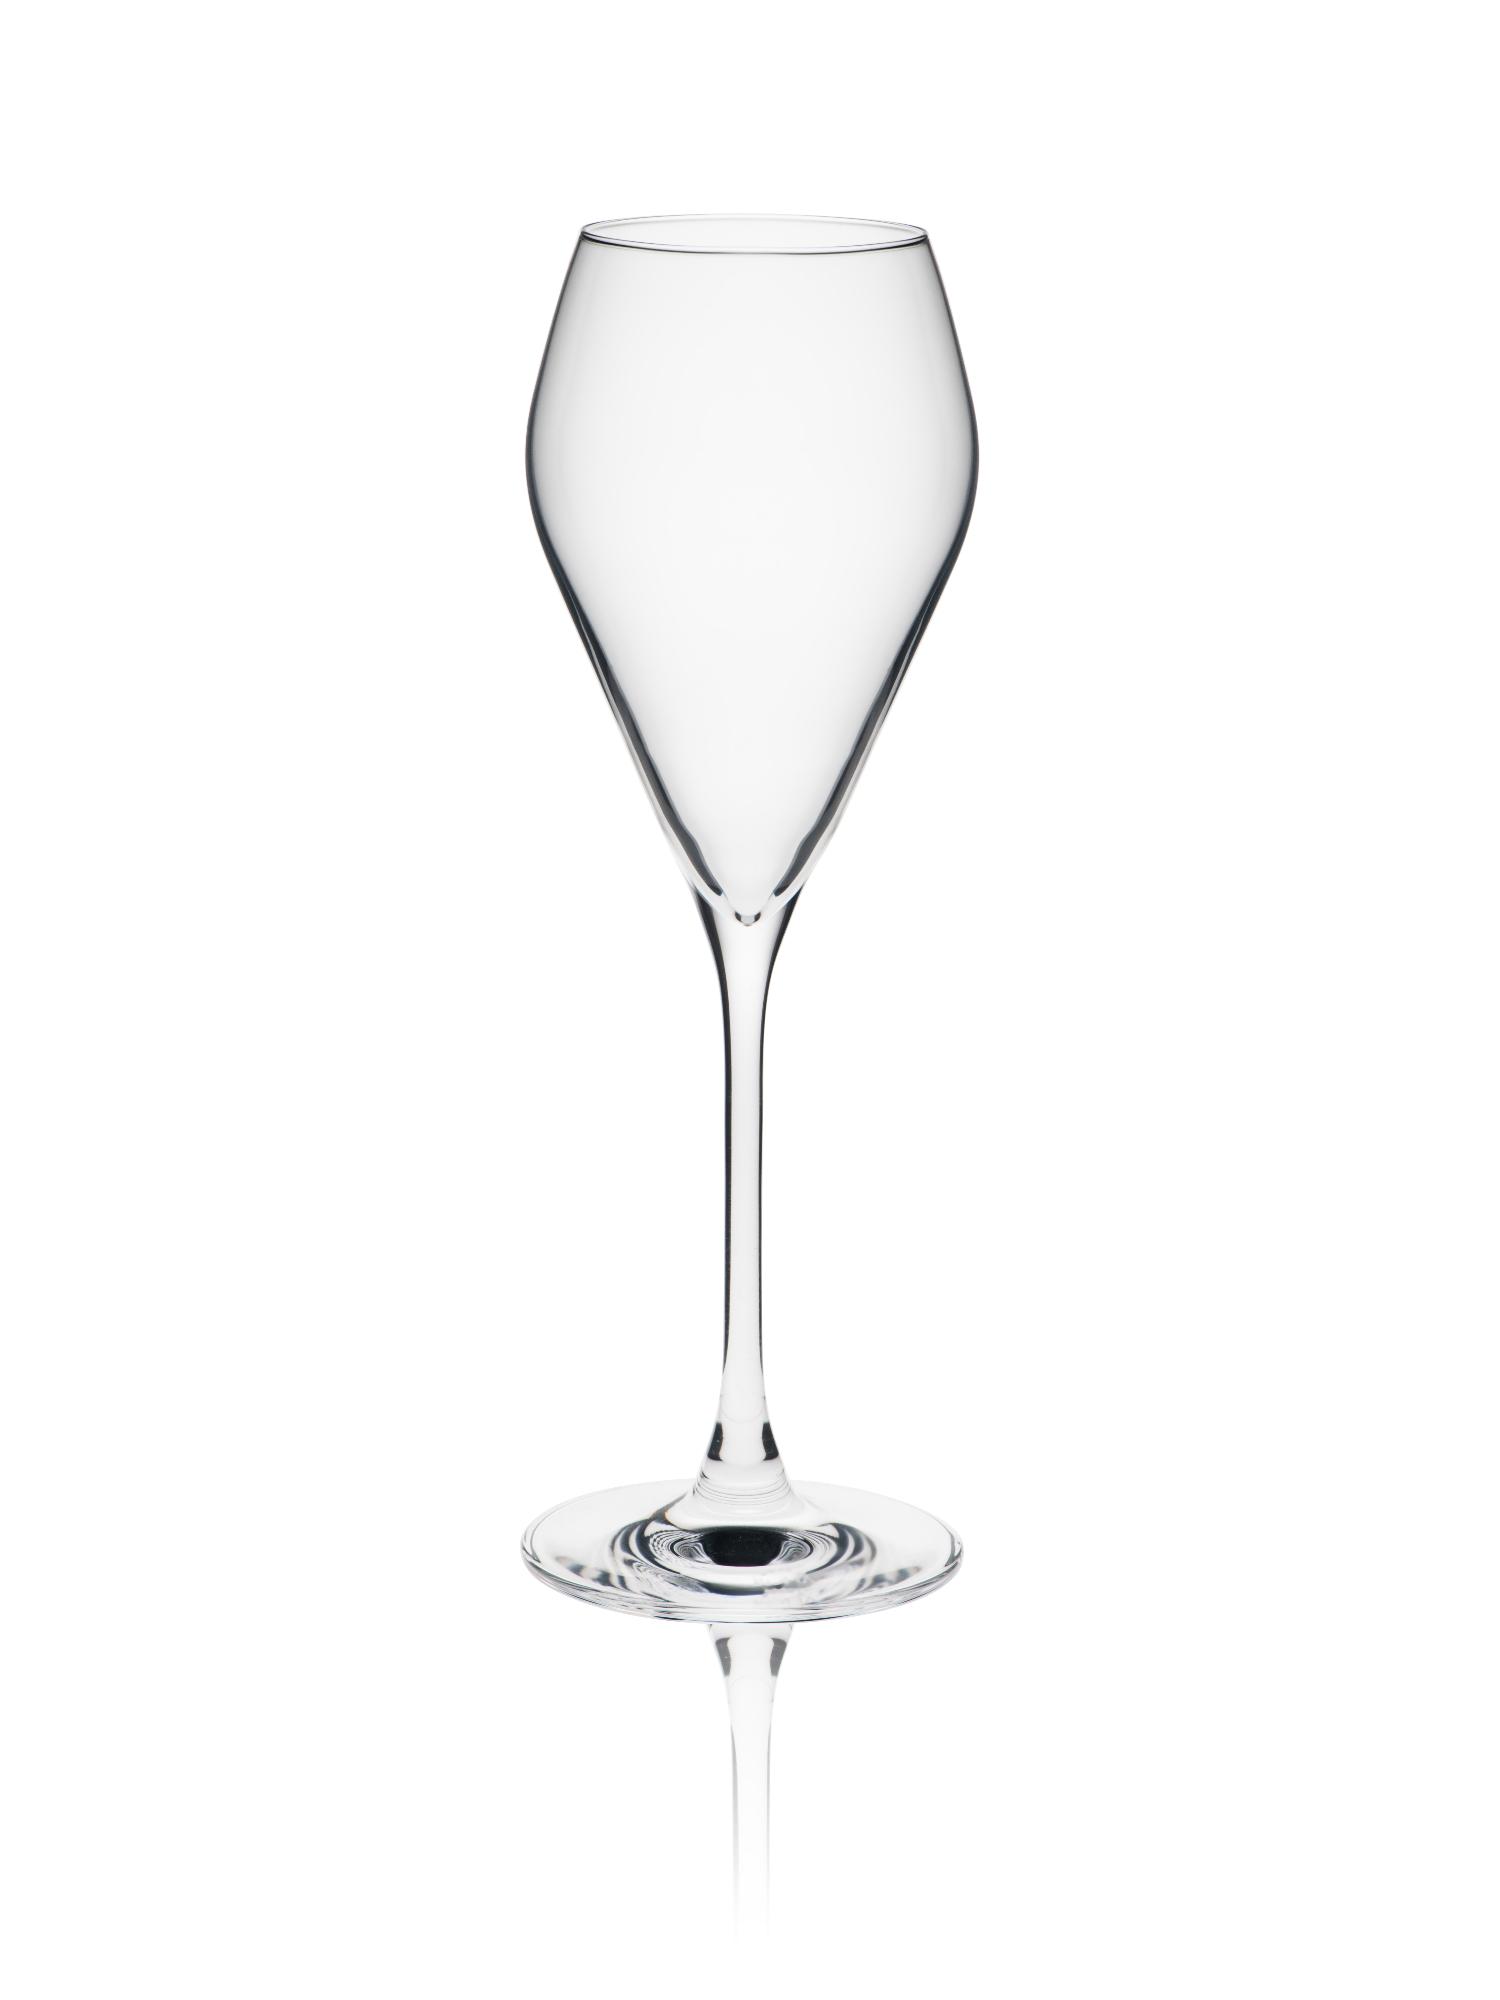 Mode Prosecco glass, 240ml